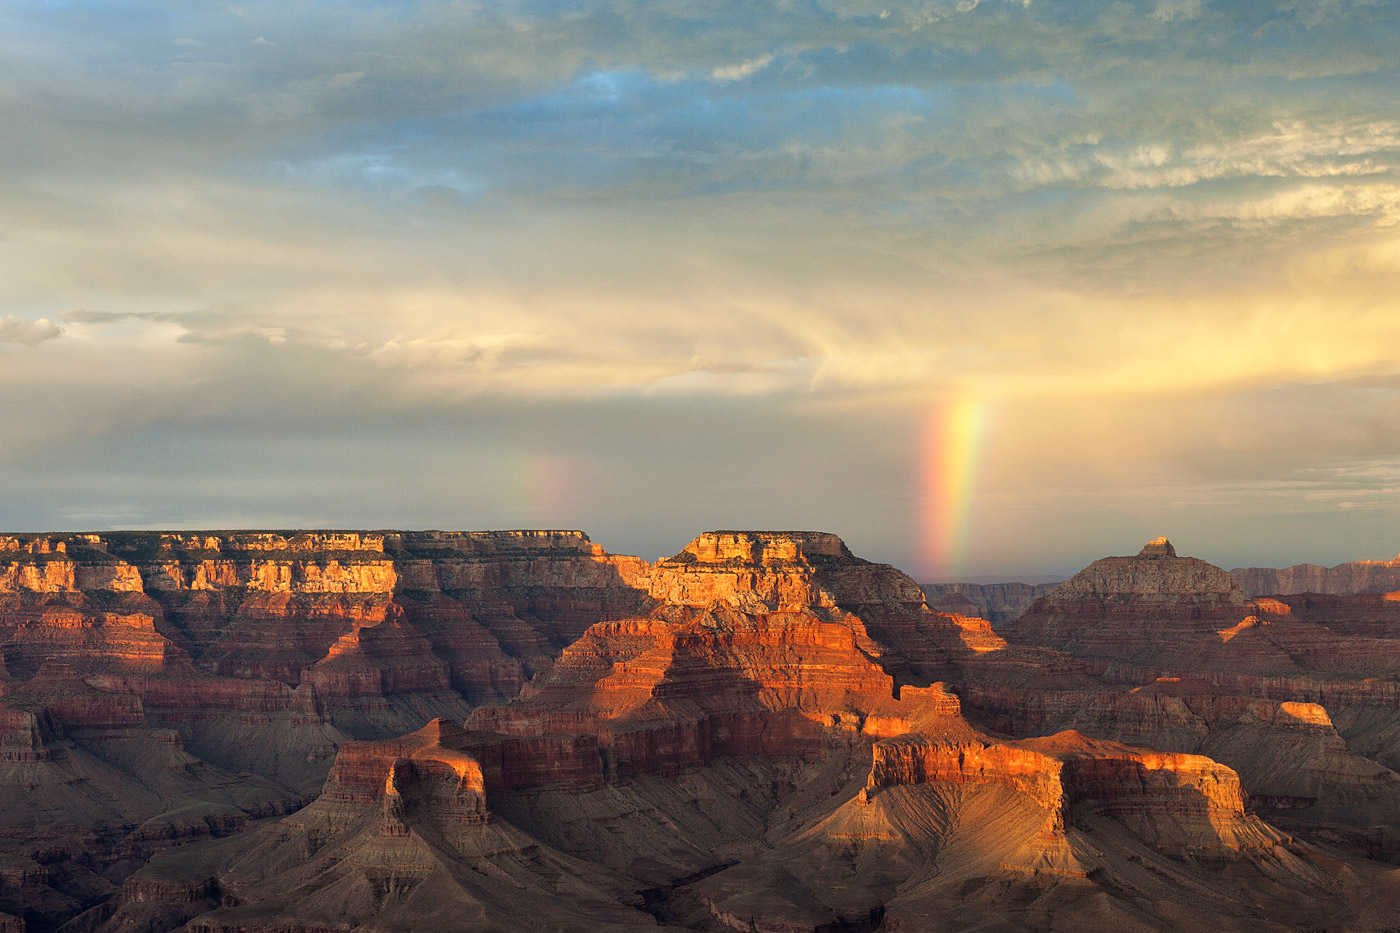 Grand-Canyon-National-Park-ABP-Yaki-Point-sunset-rainbow.jpg